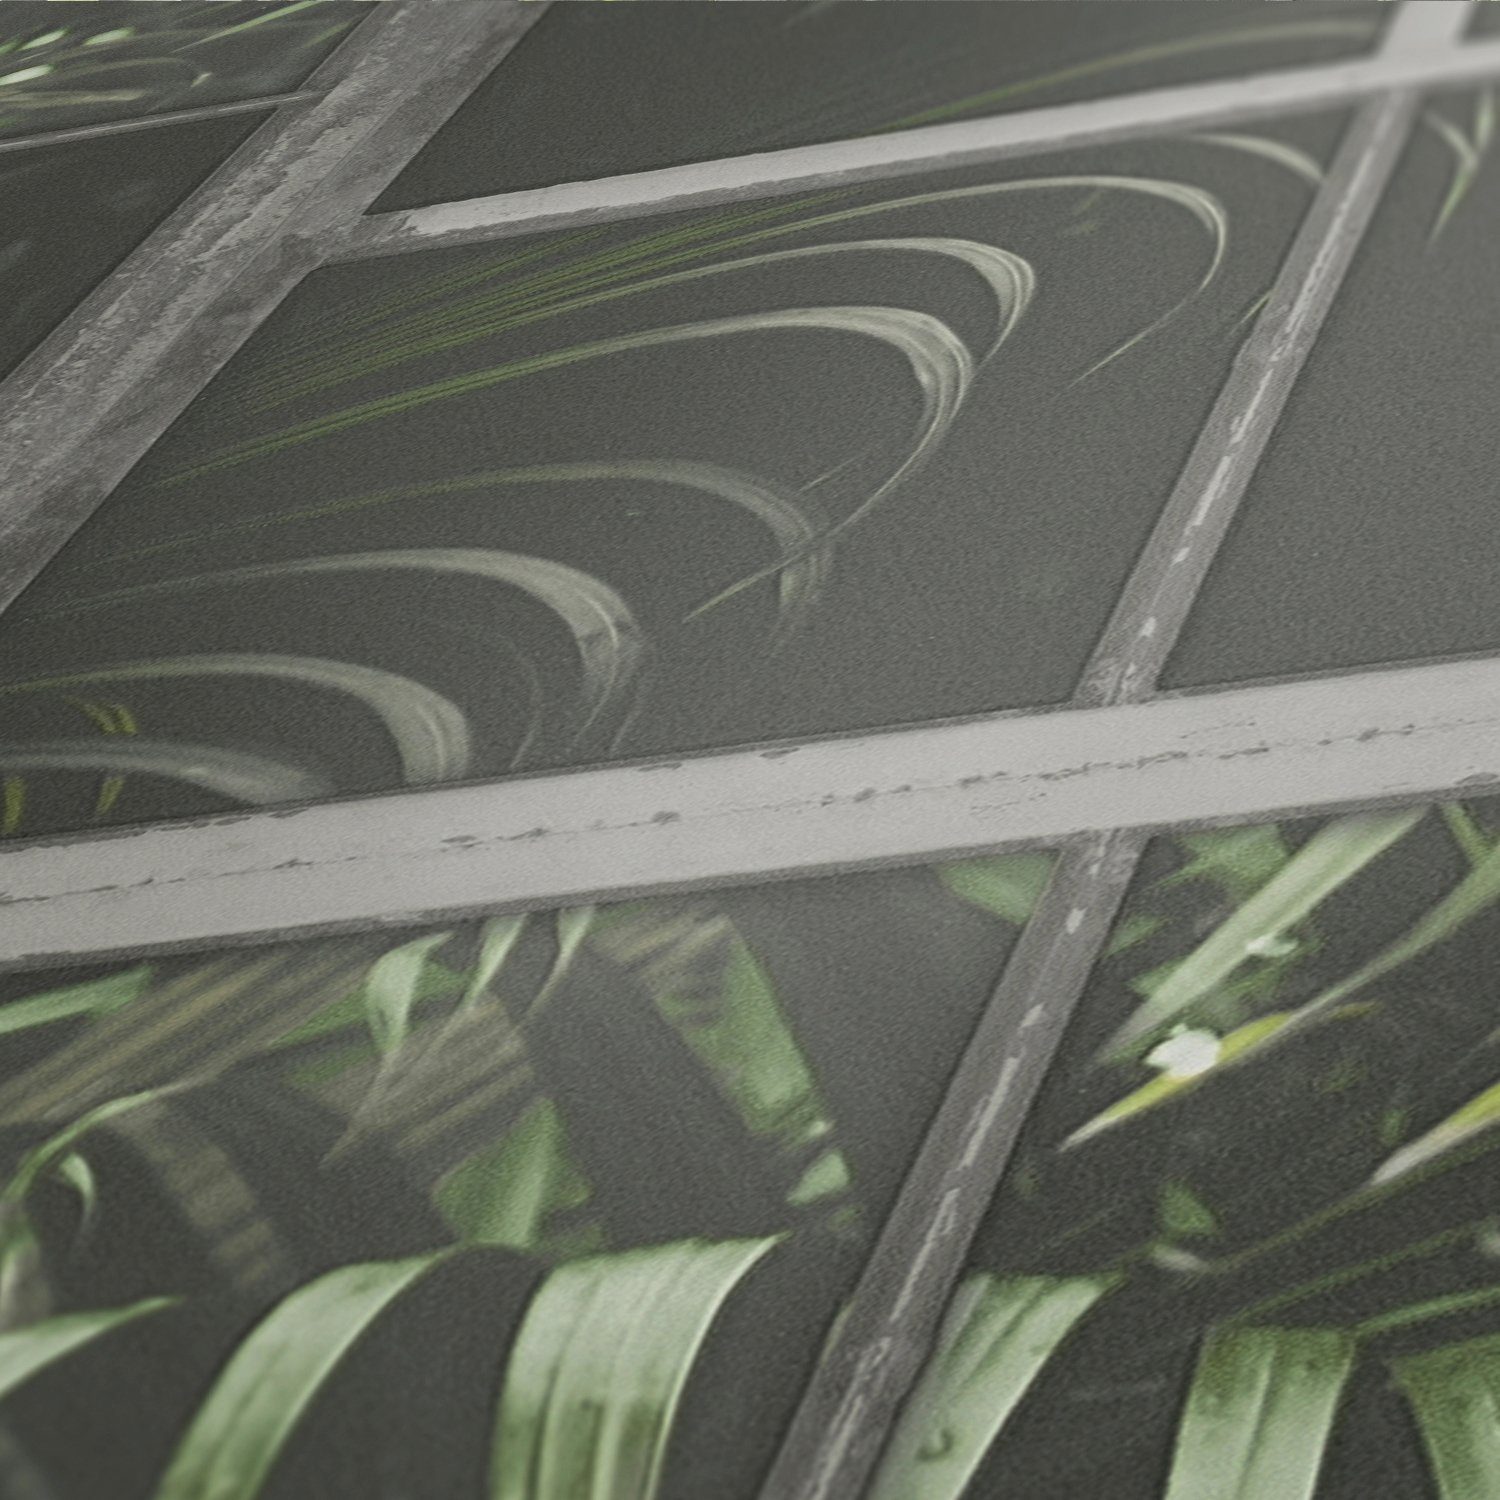 Dschungeltapete Palmen living grün/schwarz/graugrün floral, walls Industrial, Tapete botanisch, Vliestapete